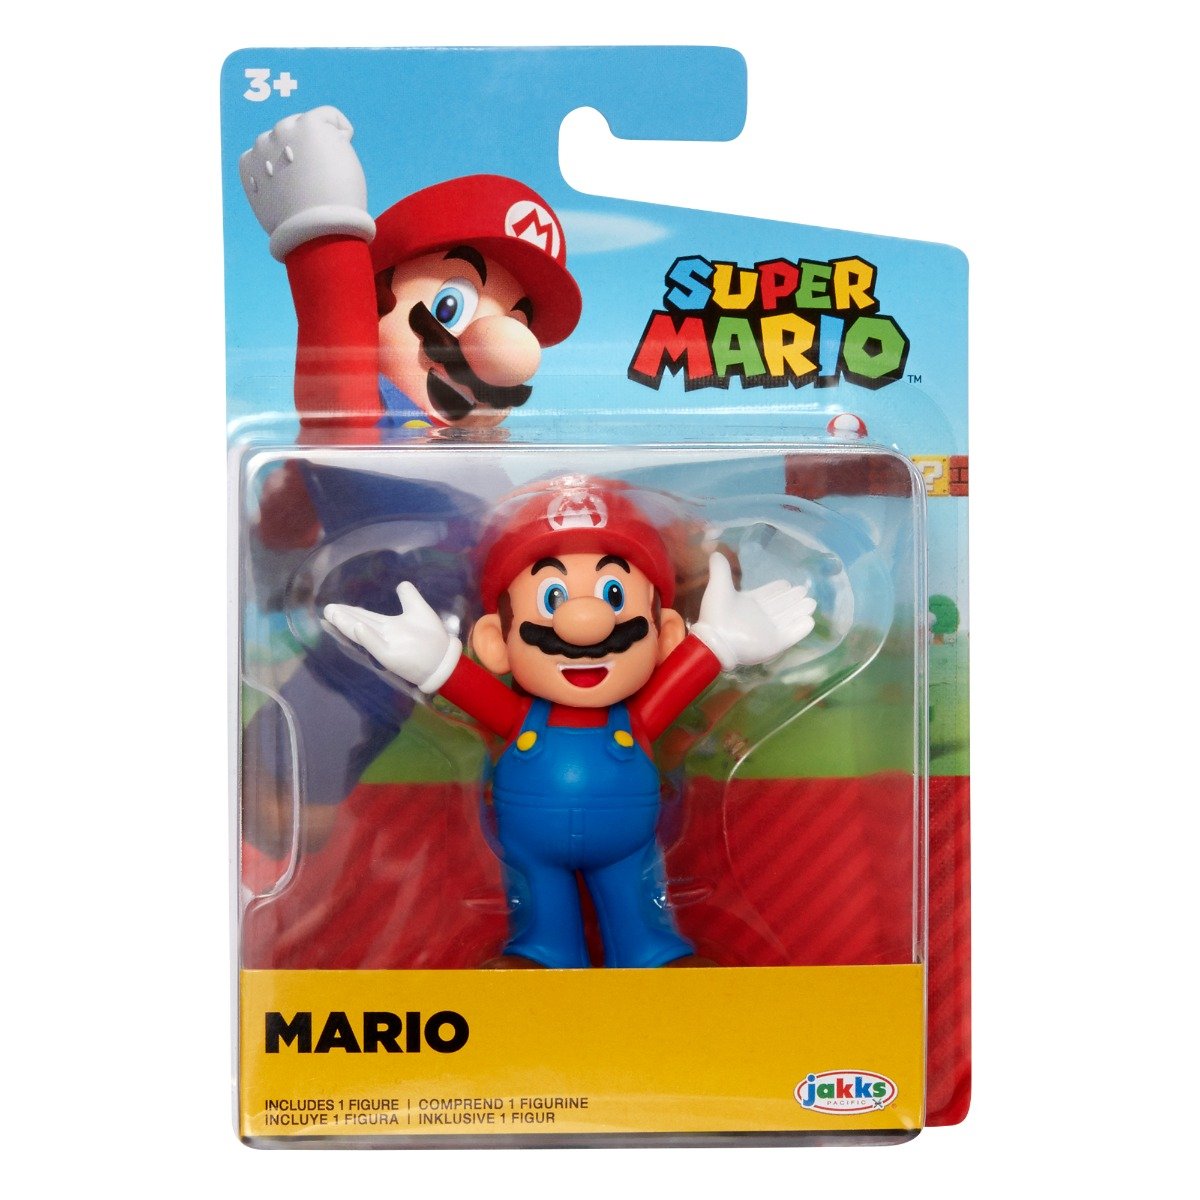 Figurina articulata, Super Mario, Mario, 6 cm